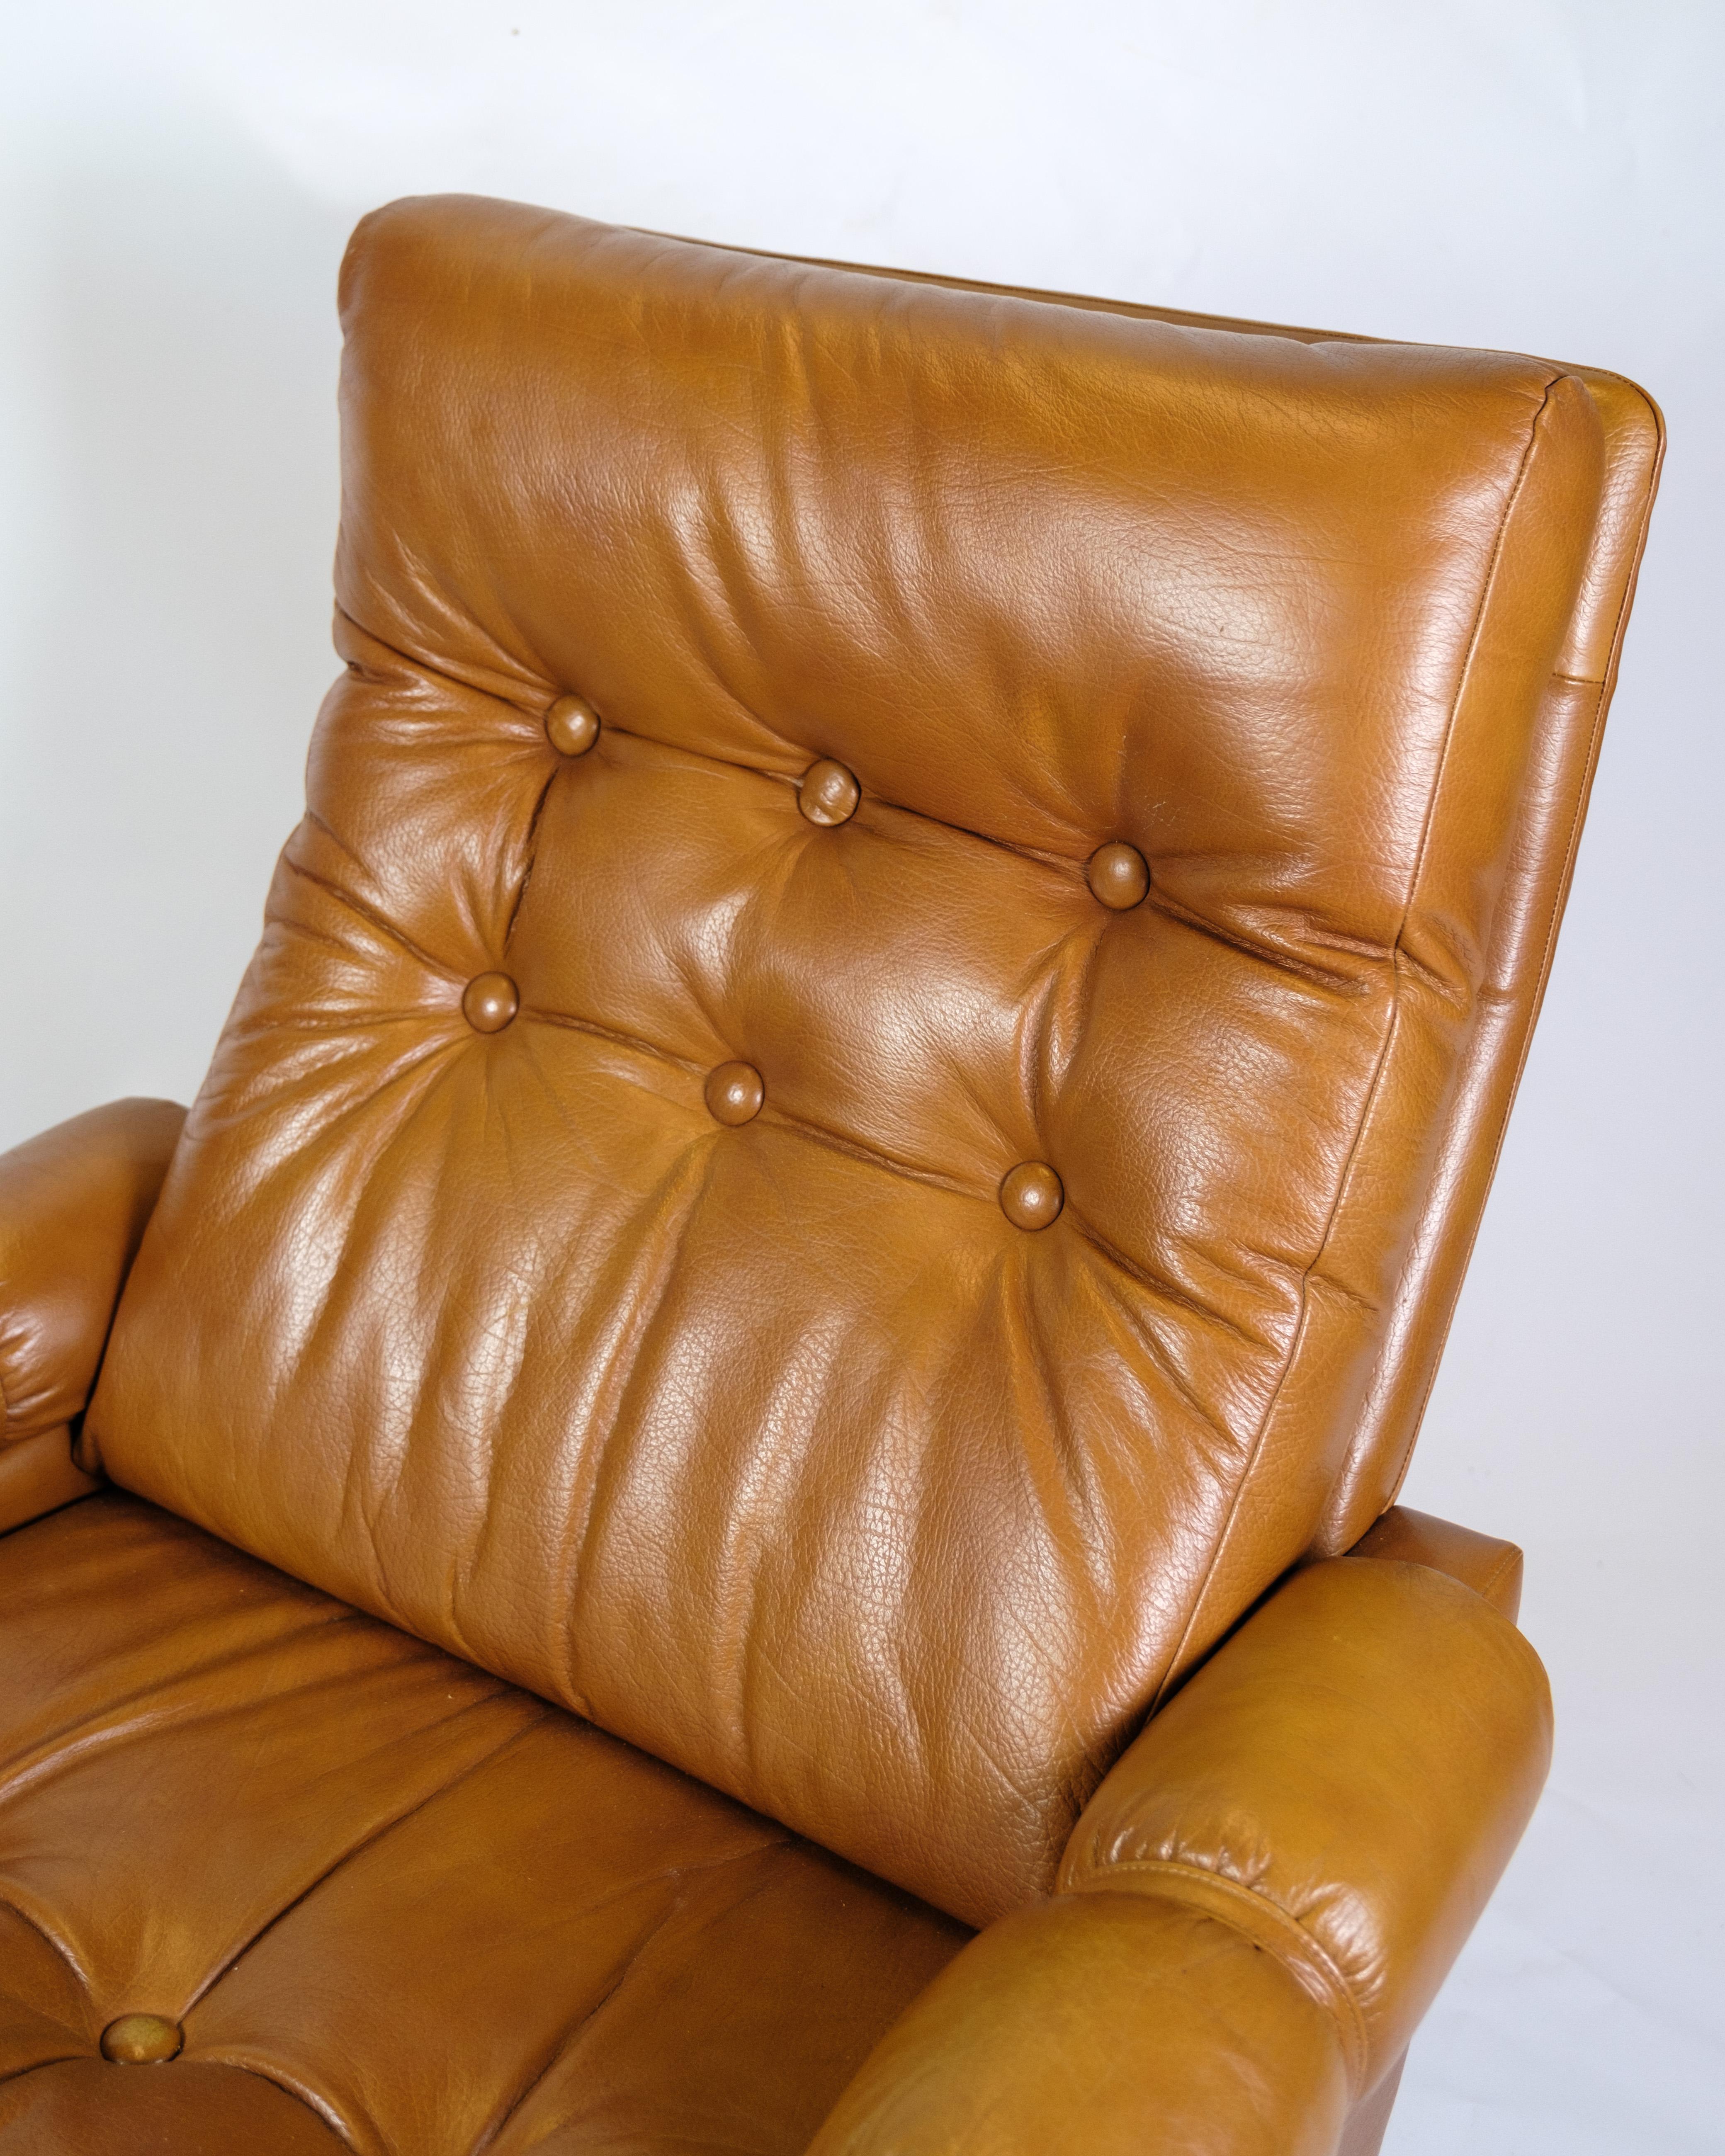 Le fauteuil en cuir cognac, exemple de design danois des années 1980, rayonne à la fois de confort et de style. La couleur chaude et riche du cuir cognac donne à la chaise un aspect sophistiqué, tandis que le cuir souple ajoute une sensation de luxe